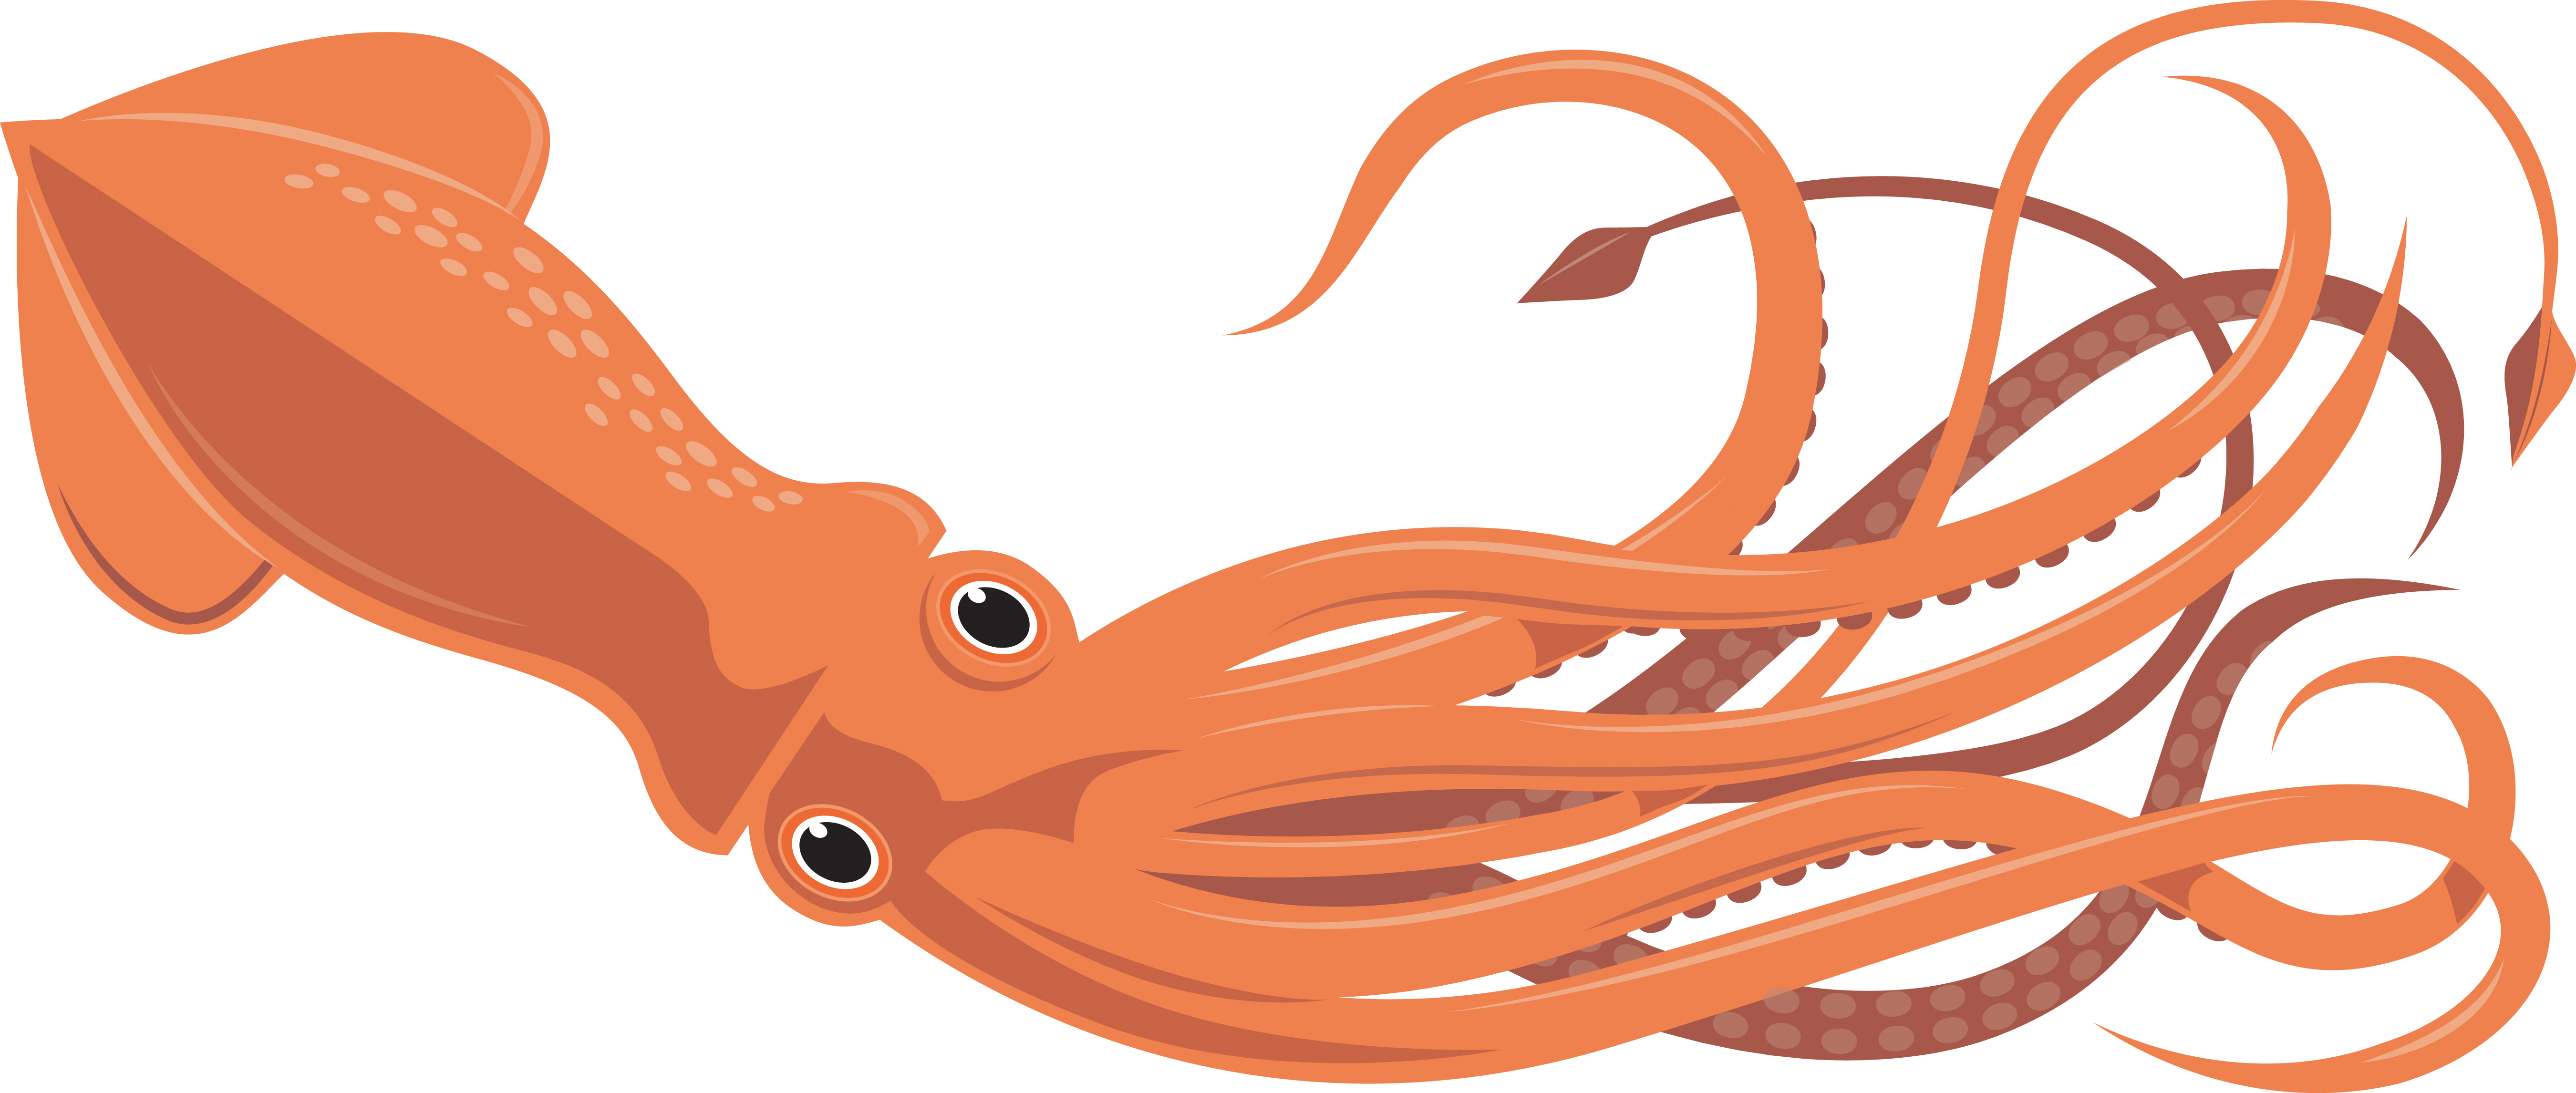 Squid Clip Art - Images, Illustrations, Photos